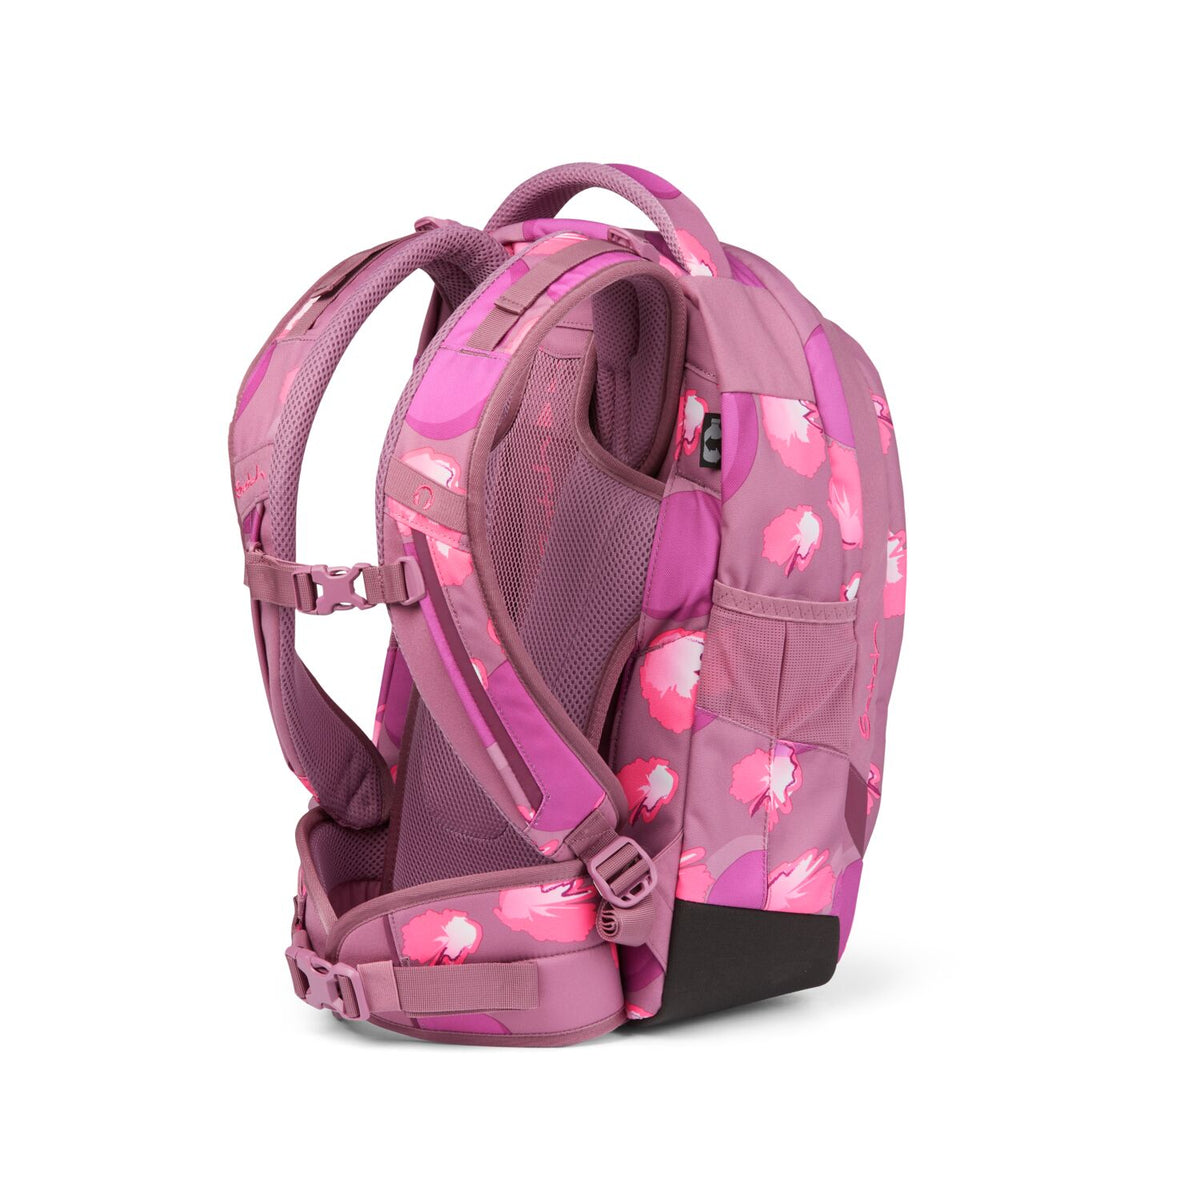 Ergonomic school backpack for teenager girls